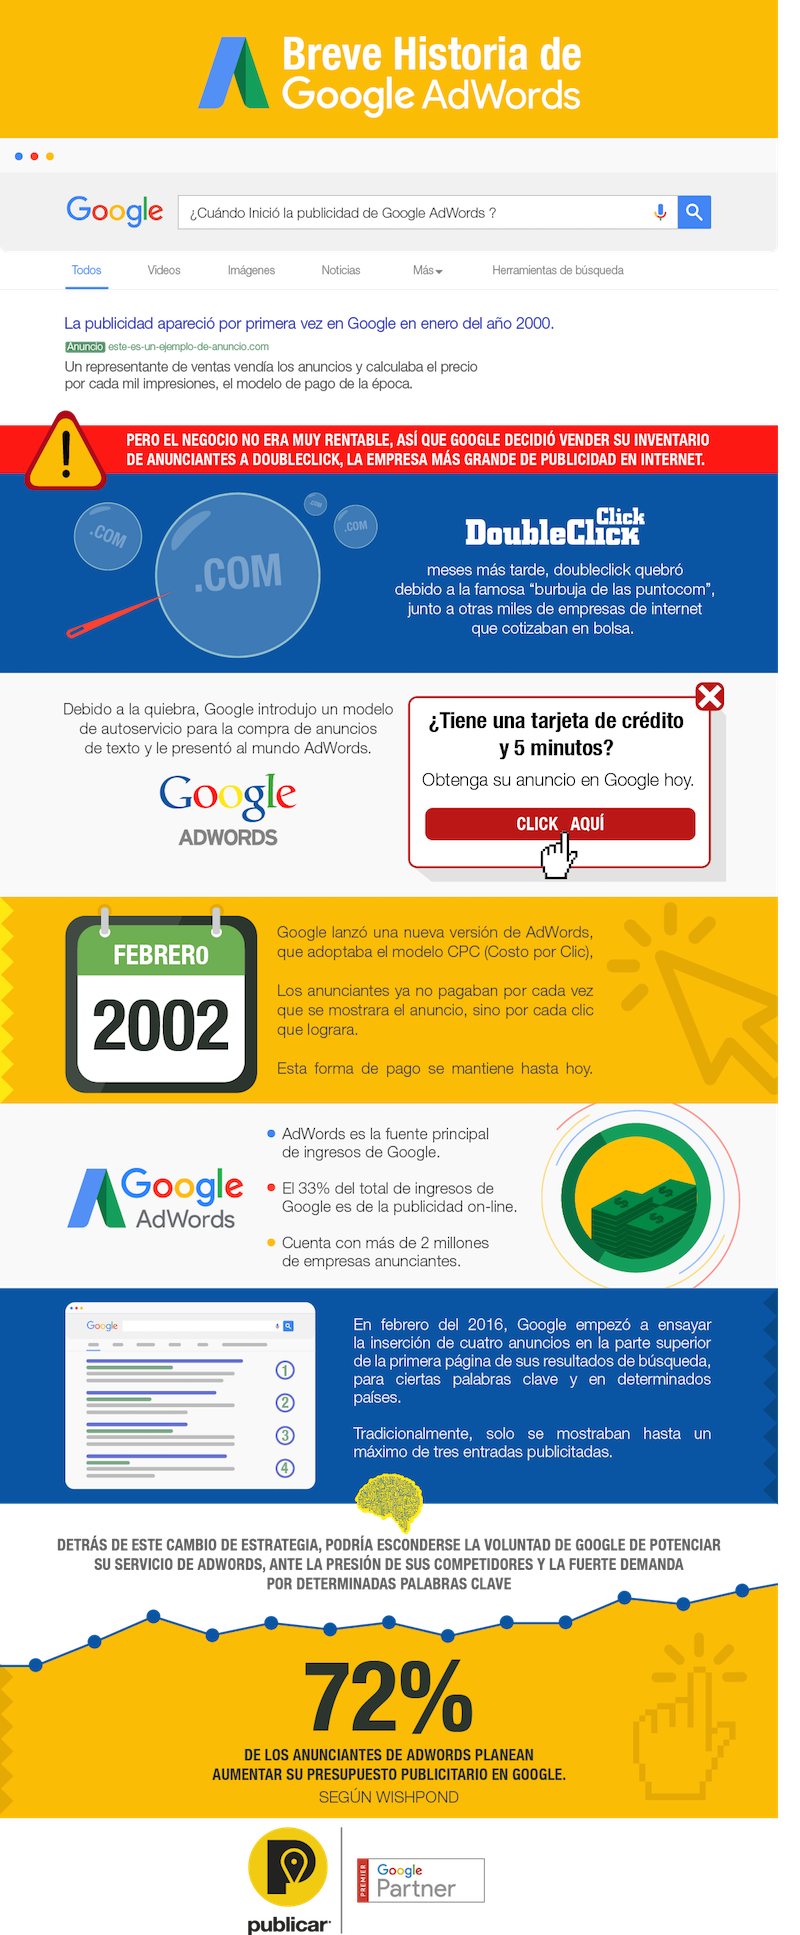 Algunos datos sobre Google AdWords